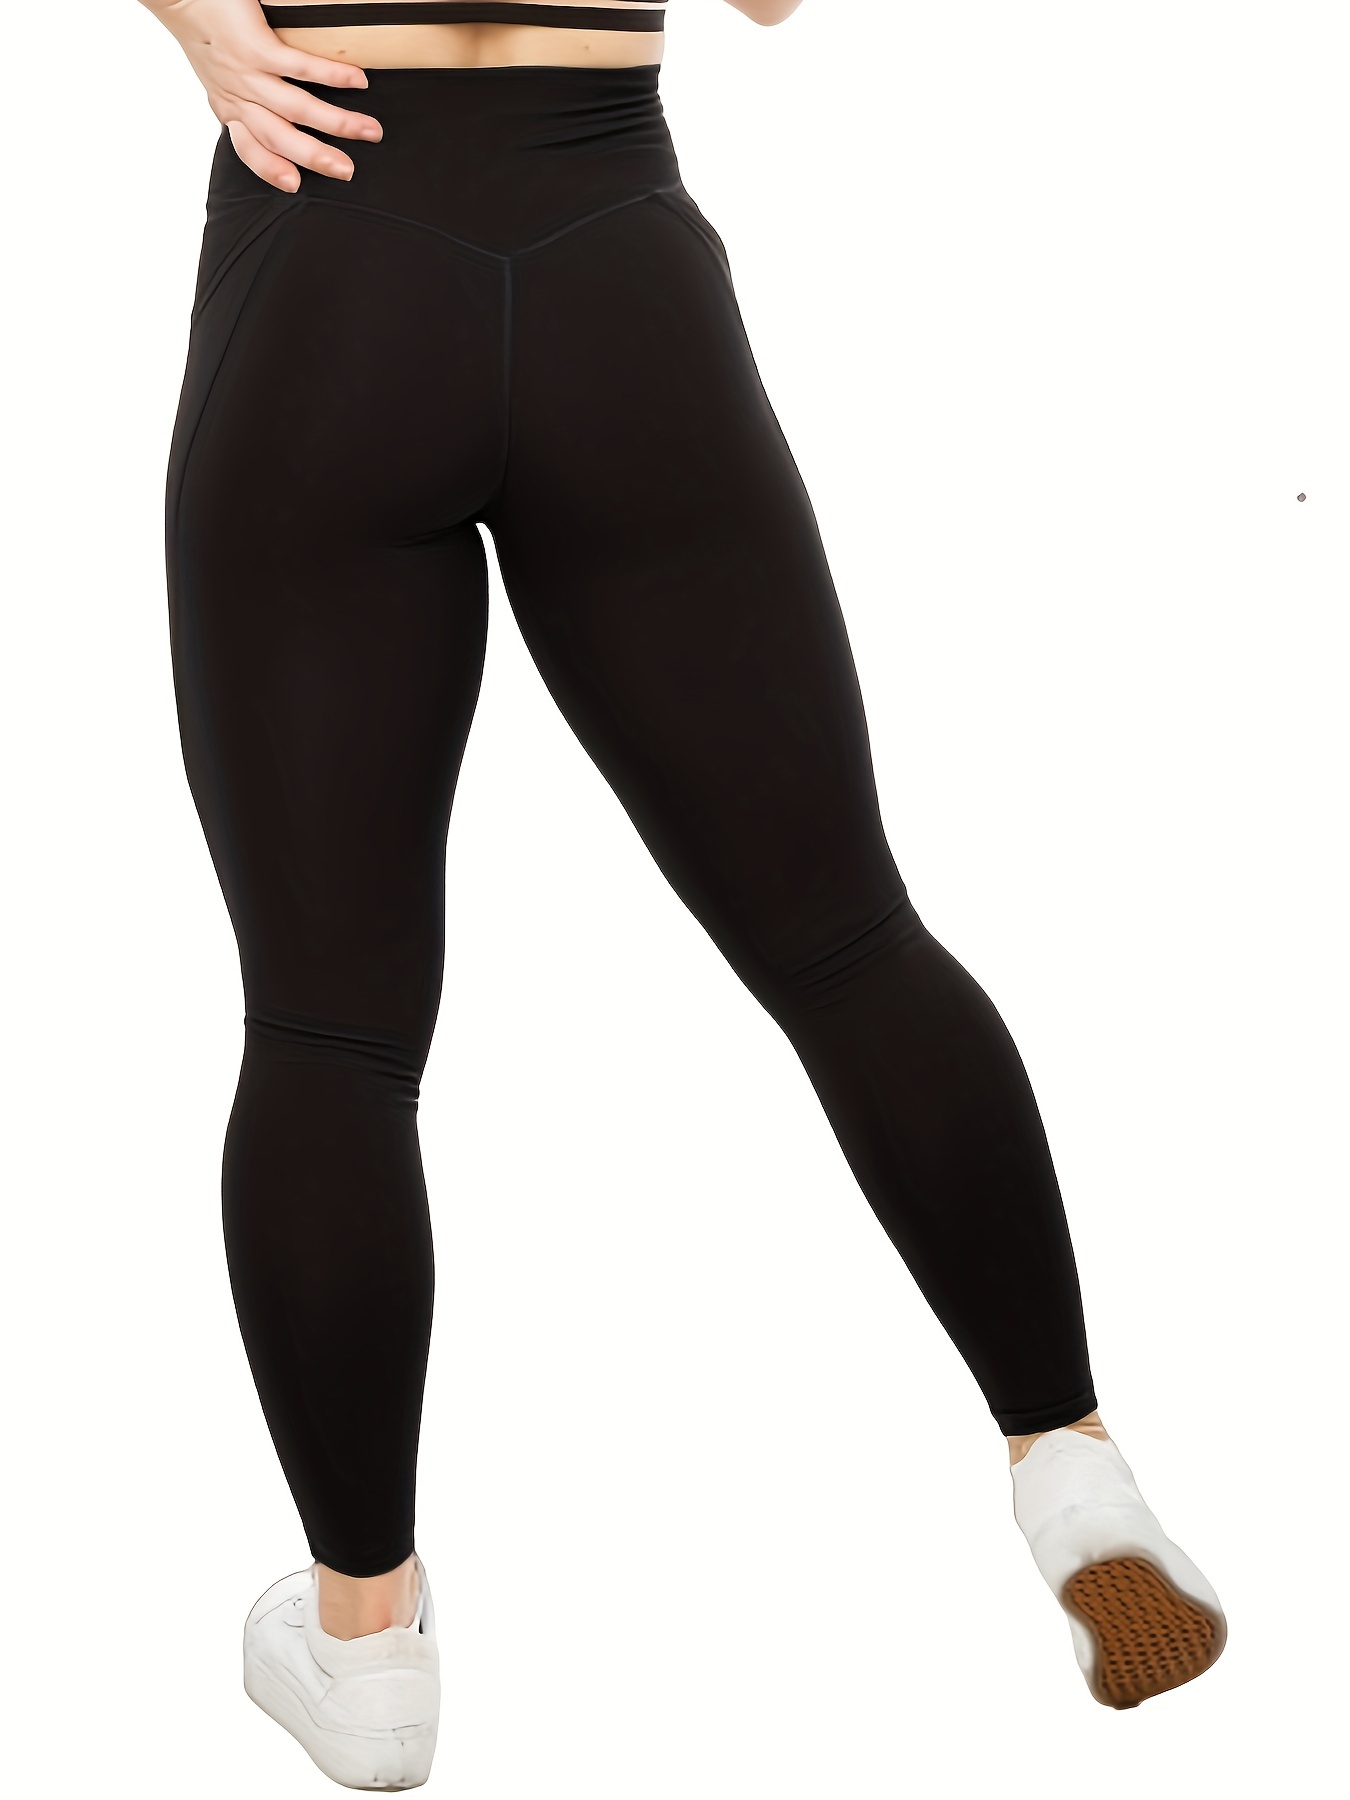 Fashion Diagram Spot Printed Leggings Women's Stretch S-XL Size Skinny  Pants 